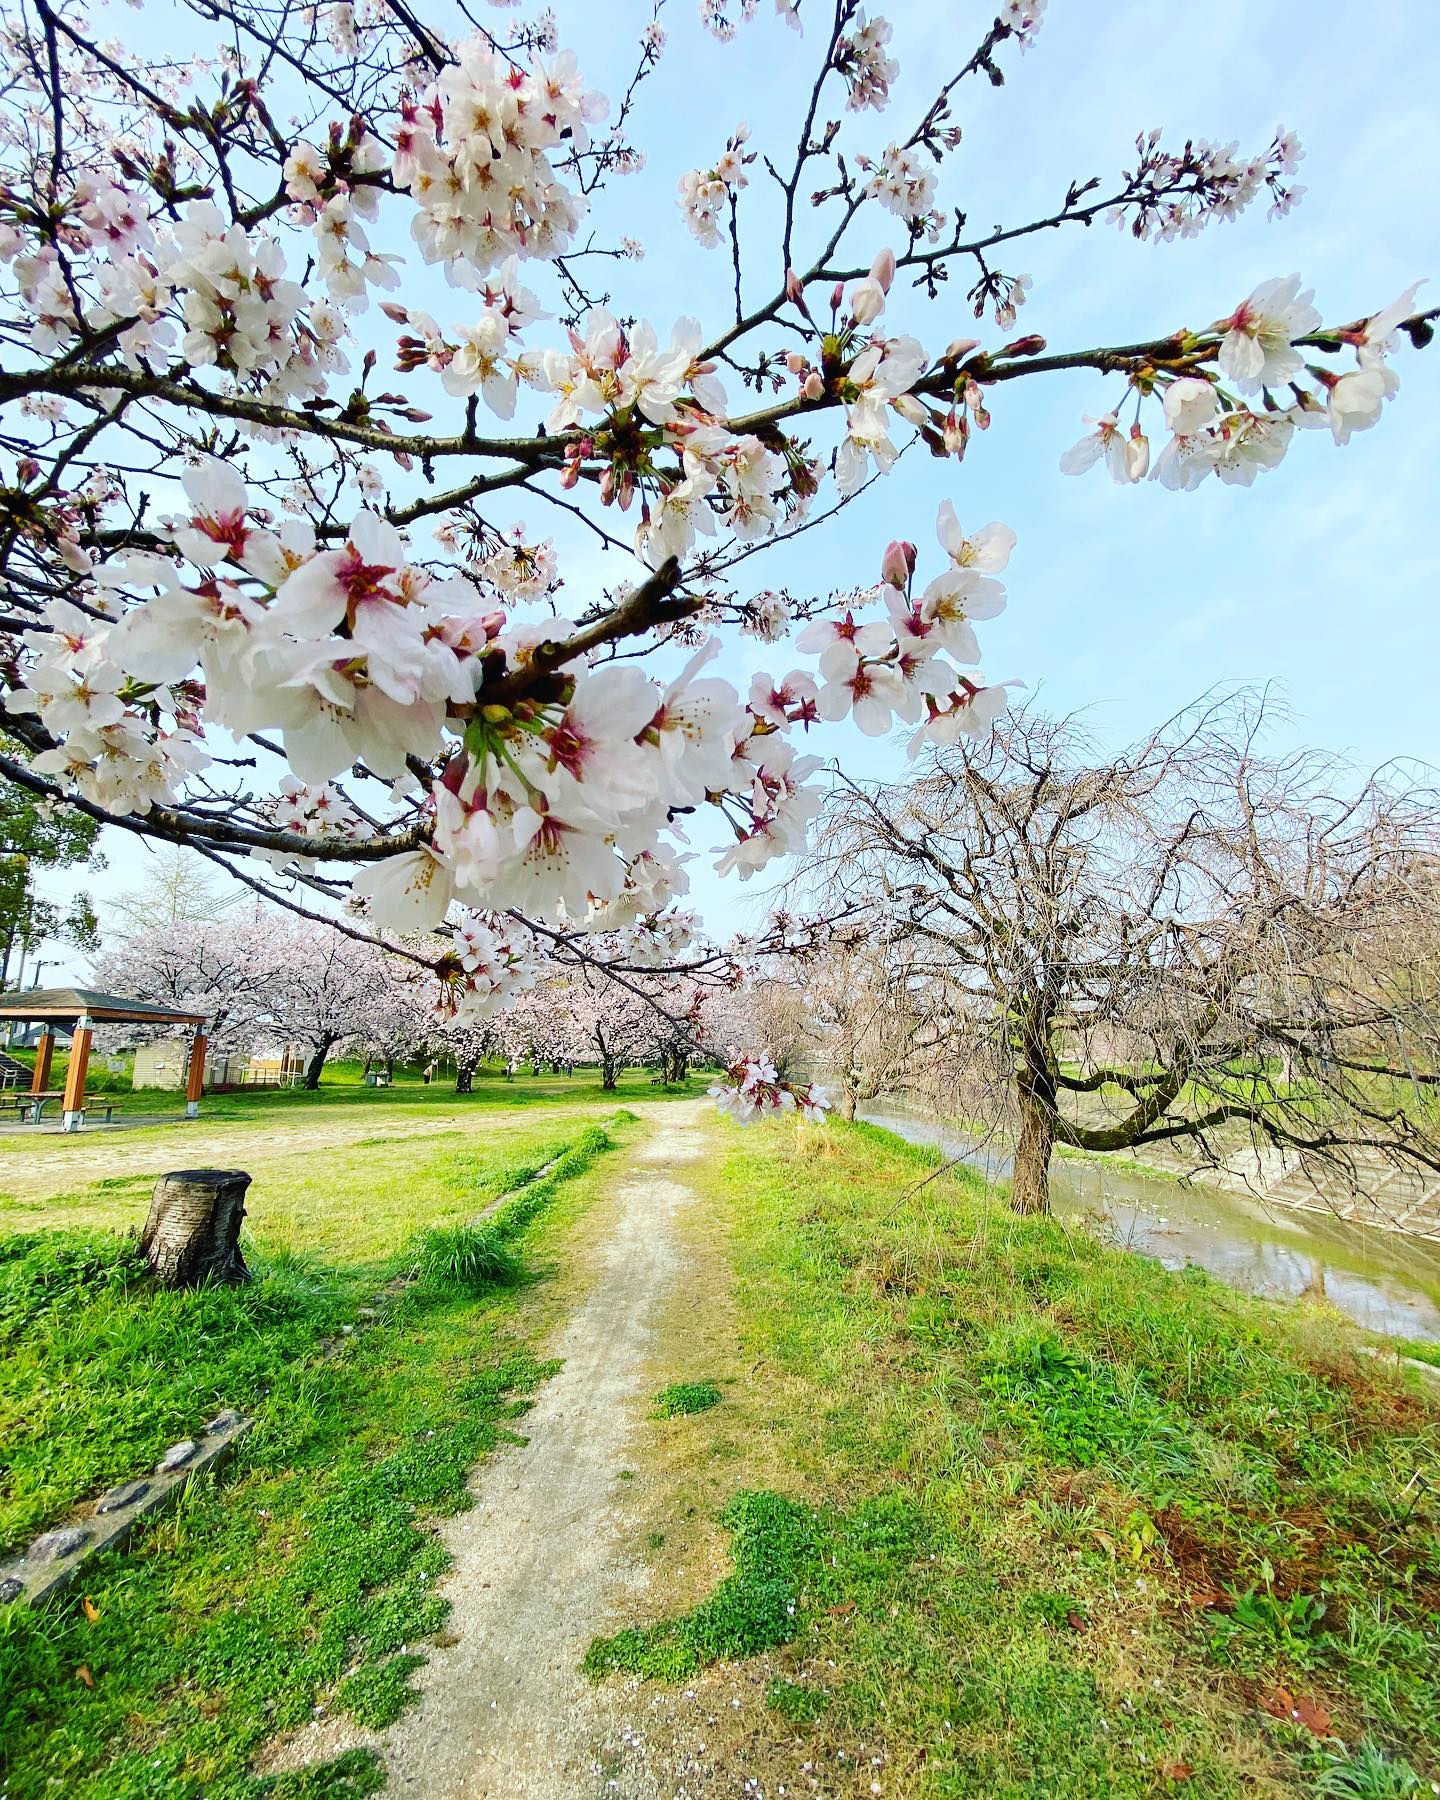 今日（20210329）のサクラ。@松山市石手川緑地公園南側昨日の雨風に耐えて、まだ満開を保っています。少し散ってしまった花もあるけれど、数日はきれいな姿が楽しめそう。そして、今週末はまた雨予報…。#サクラ #桜 #満開 #松山市 #石手川公園